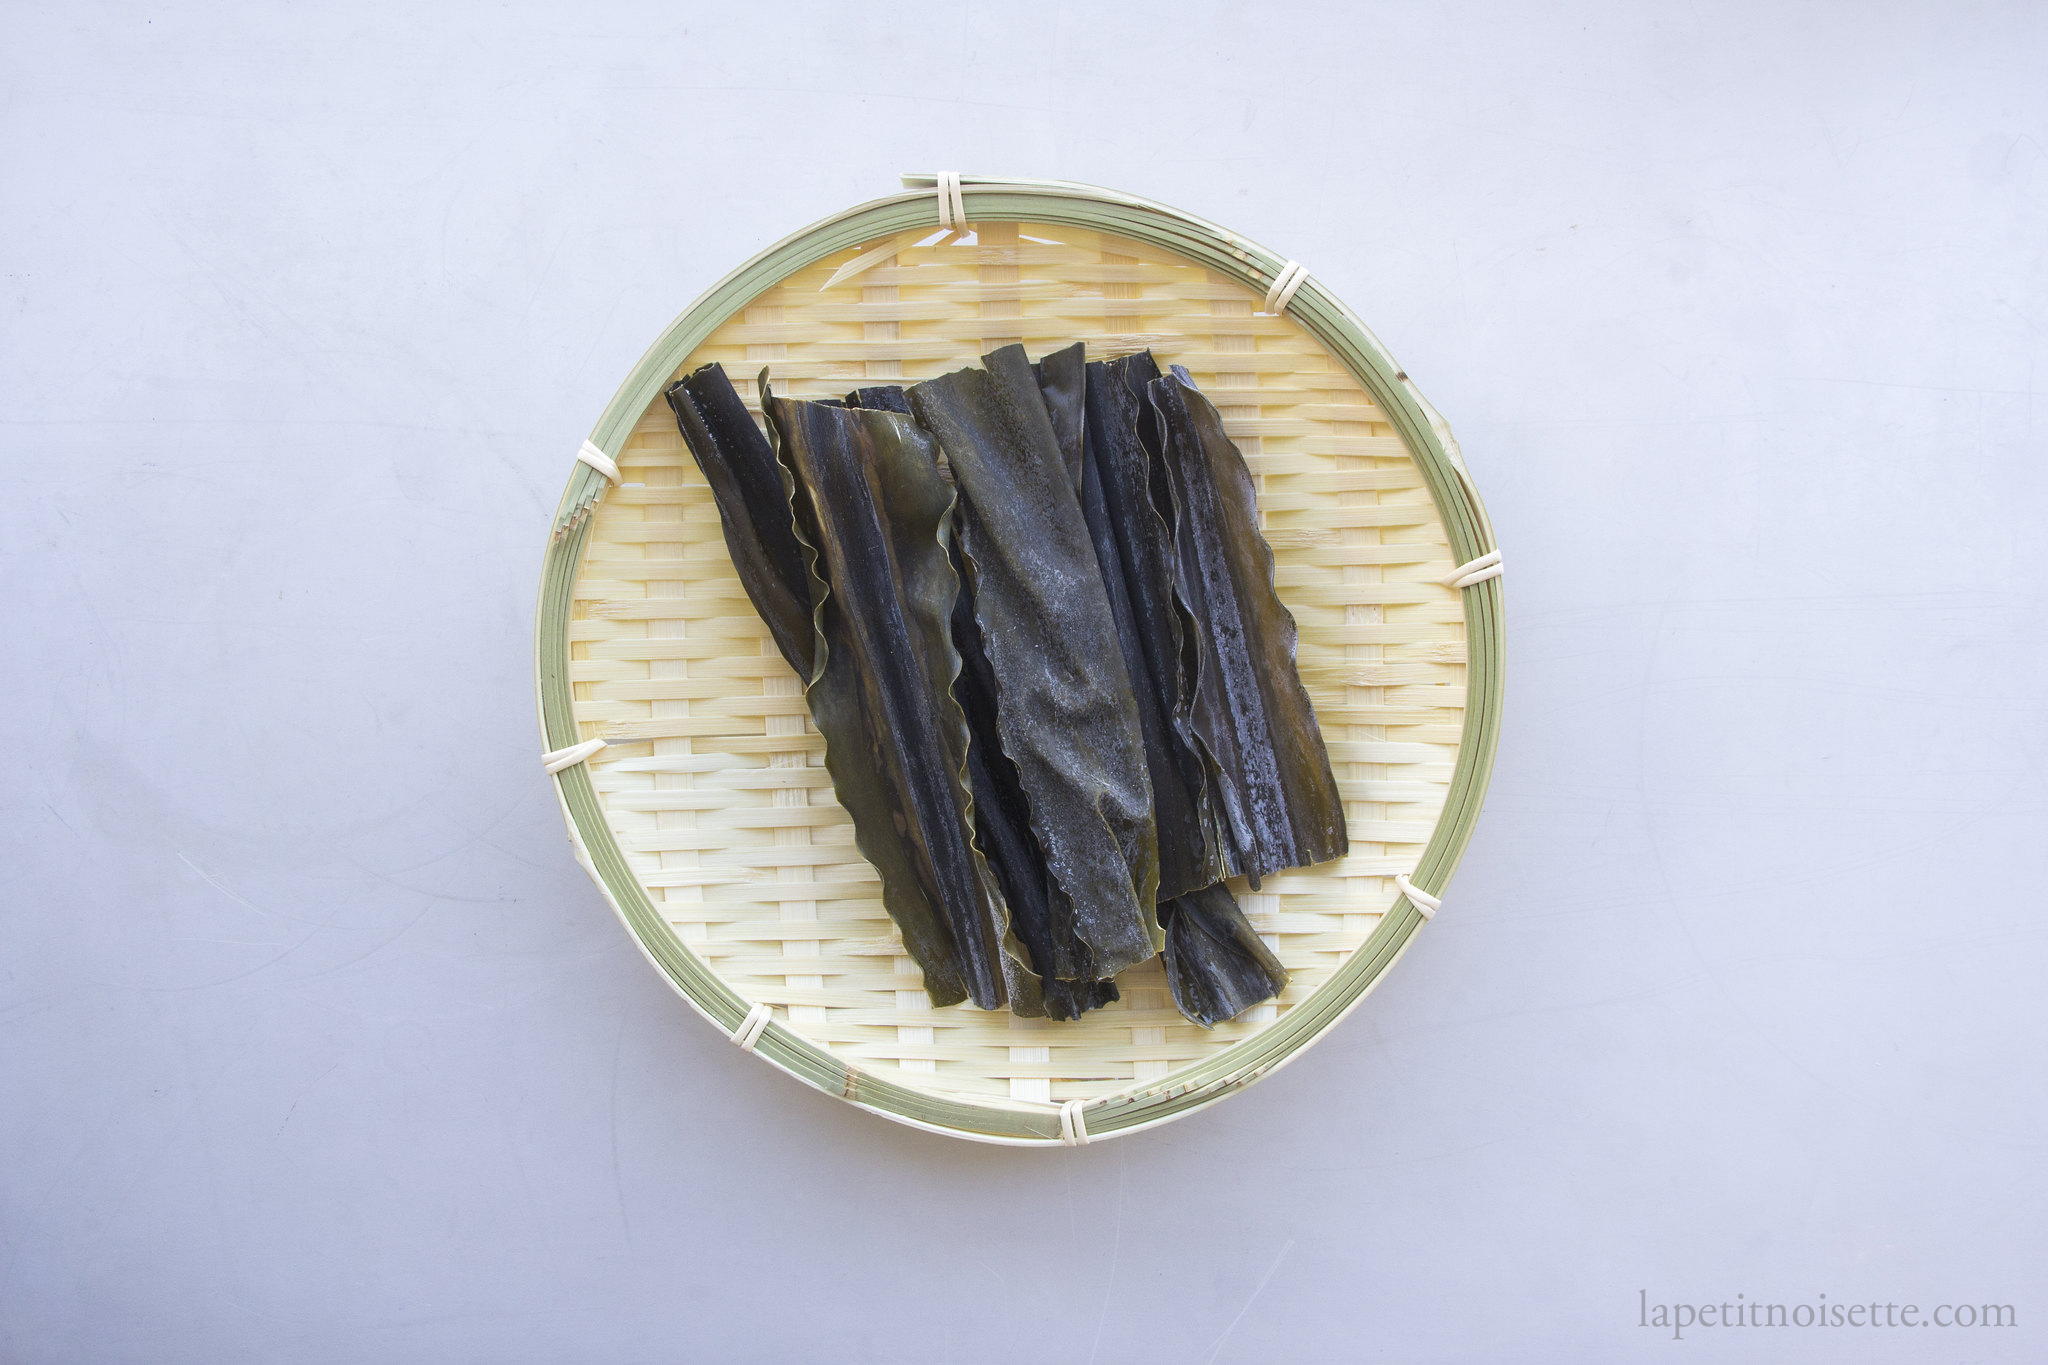 Dried Japanese kombu for making tamagokakegohan sauce.